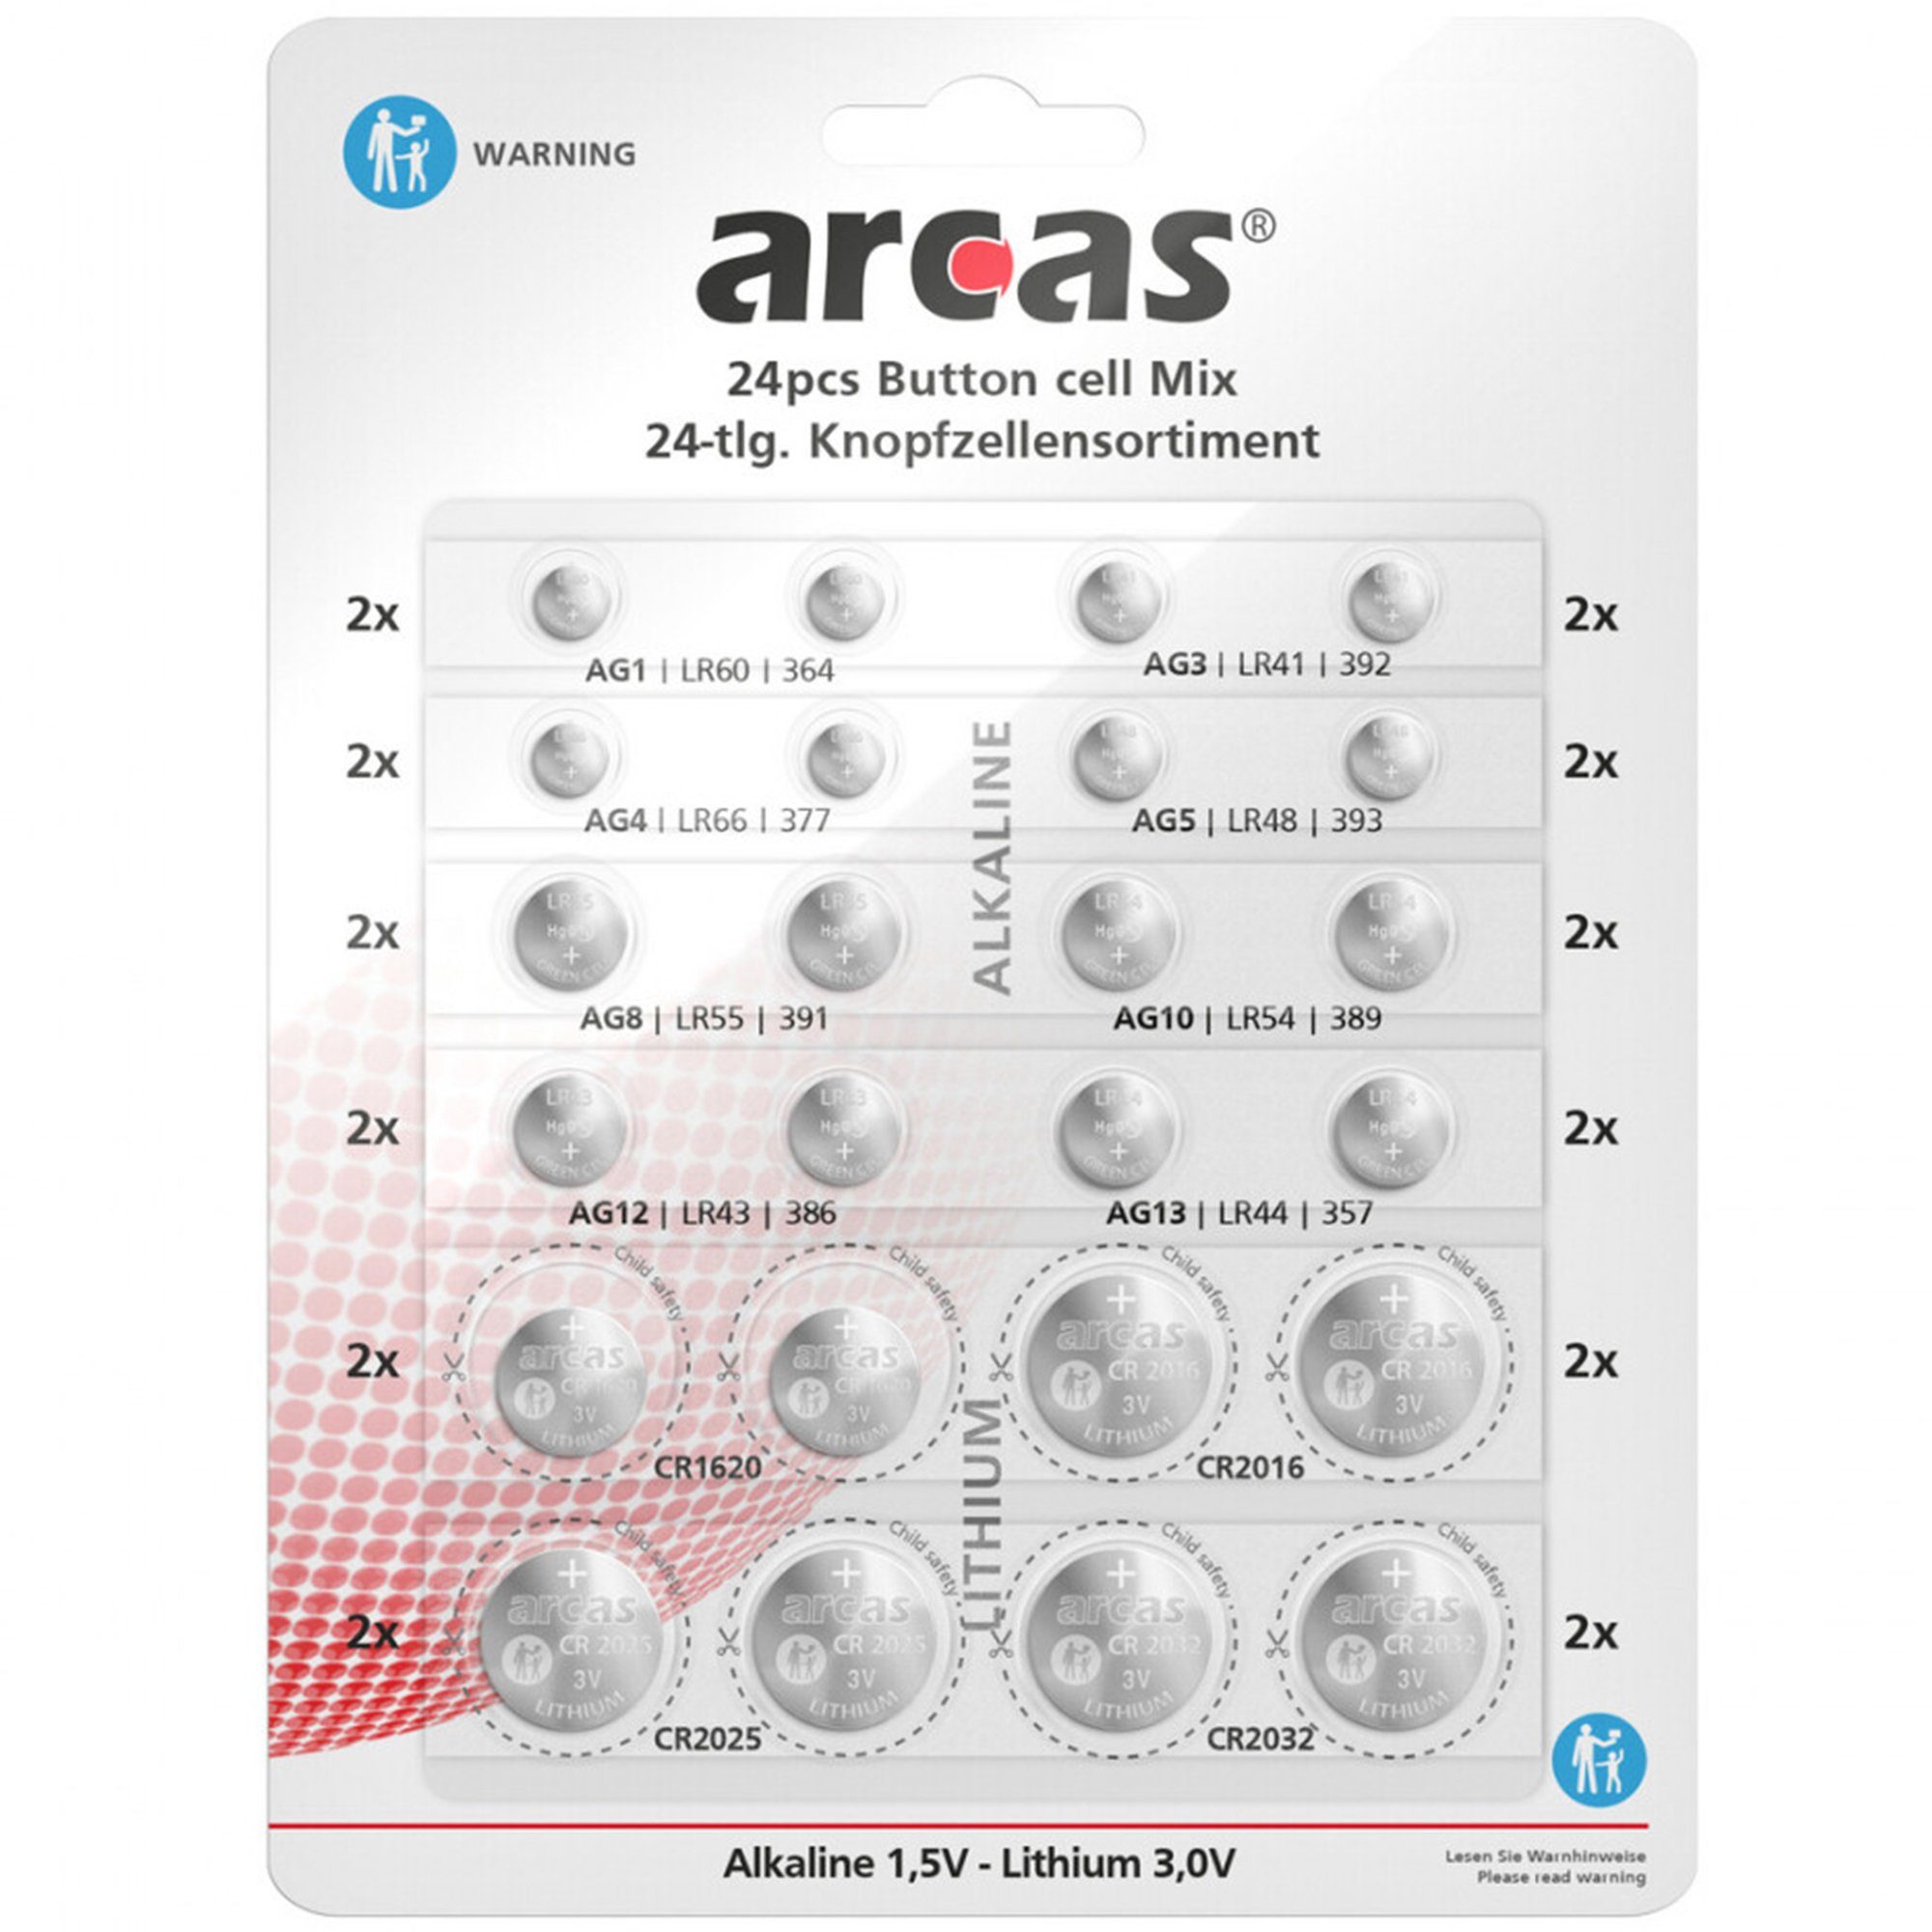 Arcas 24x Knopfzellen Set Sortiment Knopfbatterien Knopfzelle, (24 St), Knopfzellensortiment, Knopfzellenset